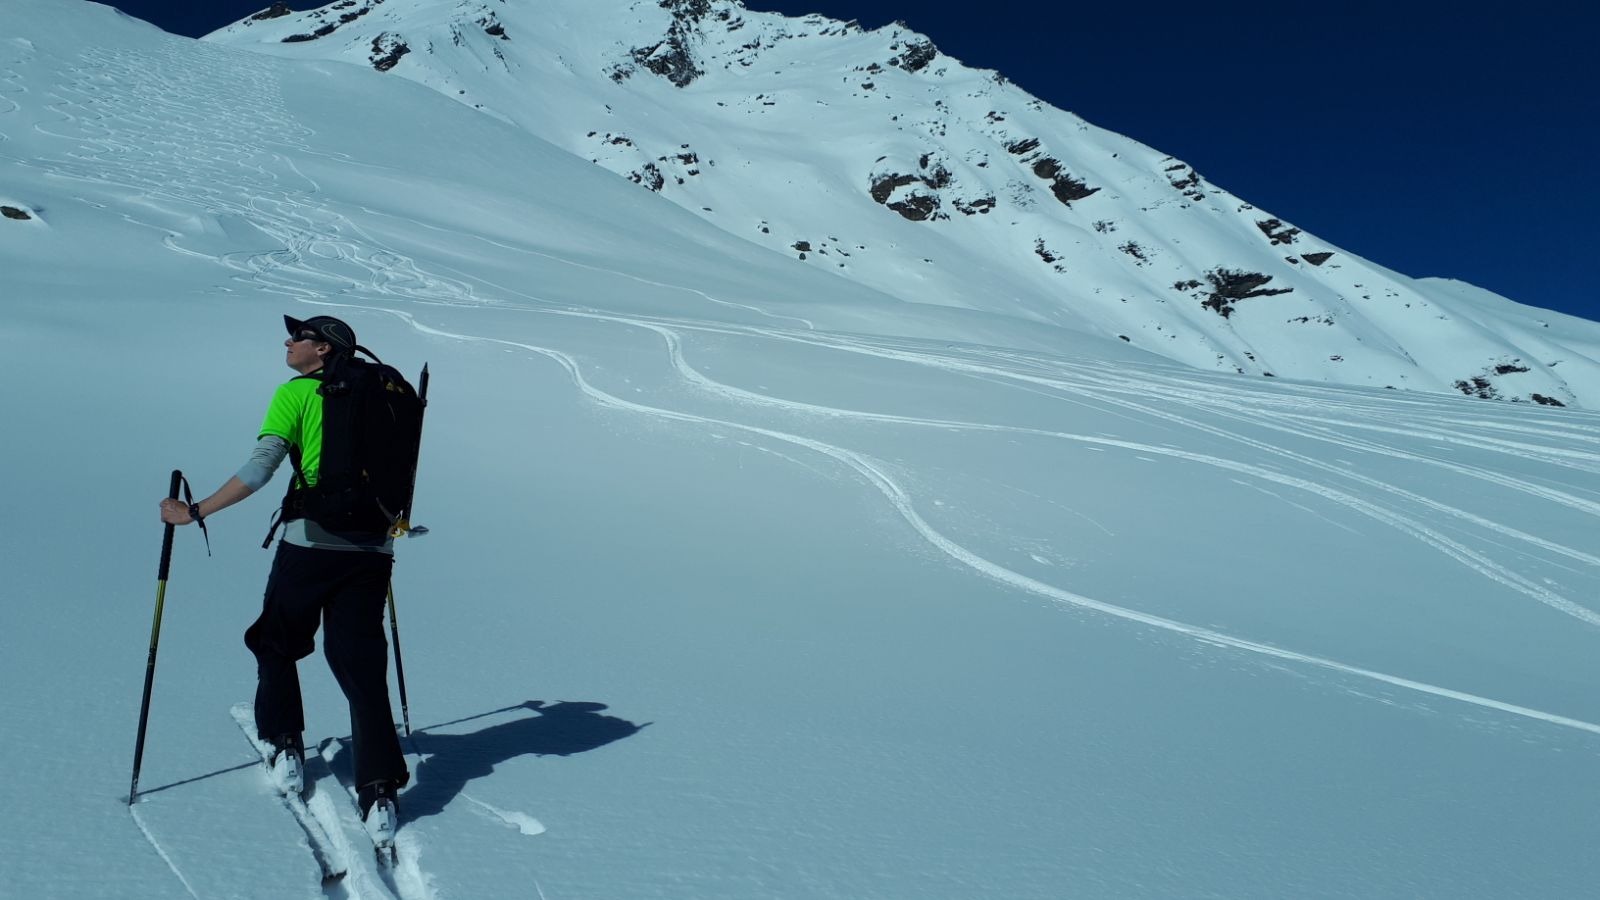 Ski touring perfect powder 